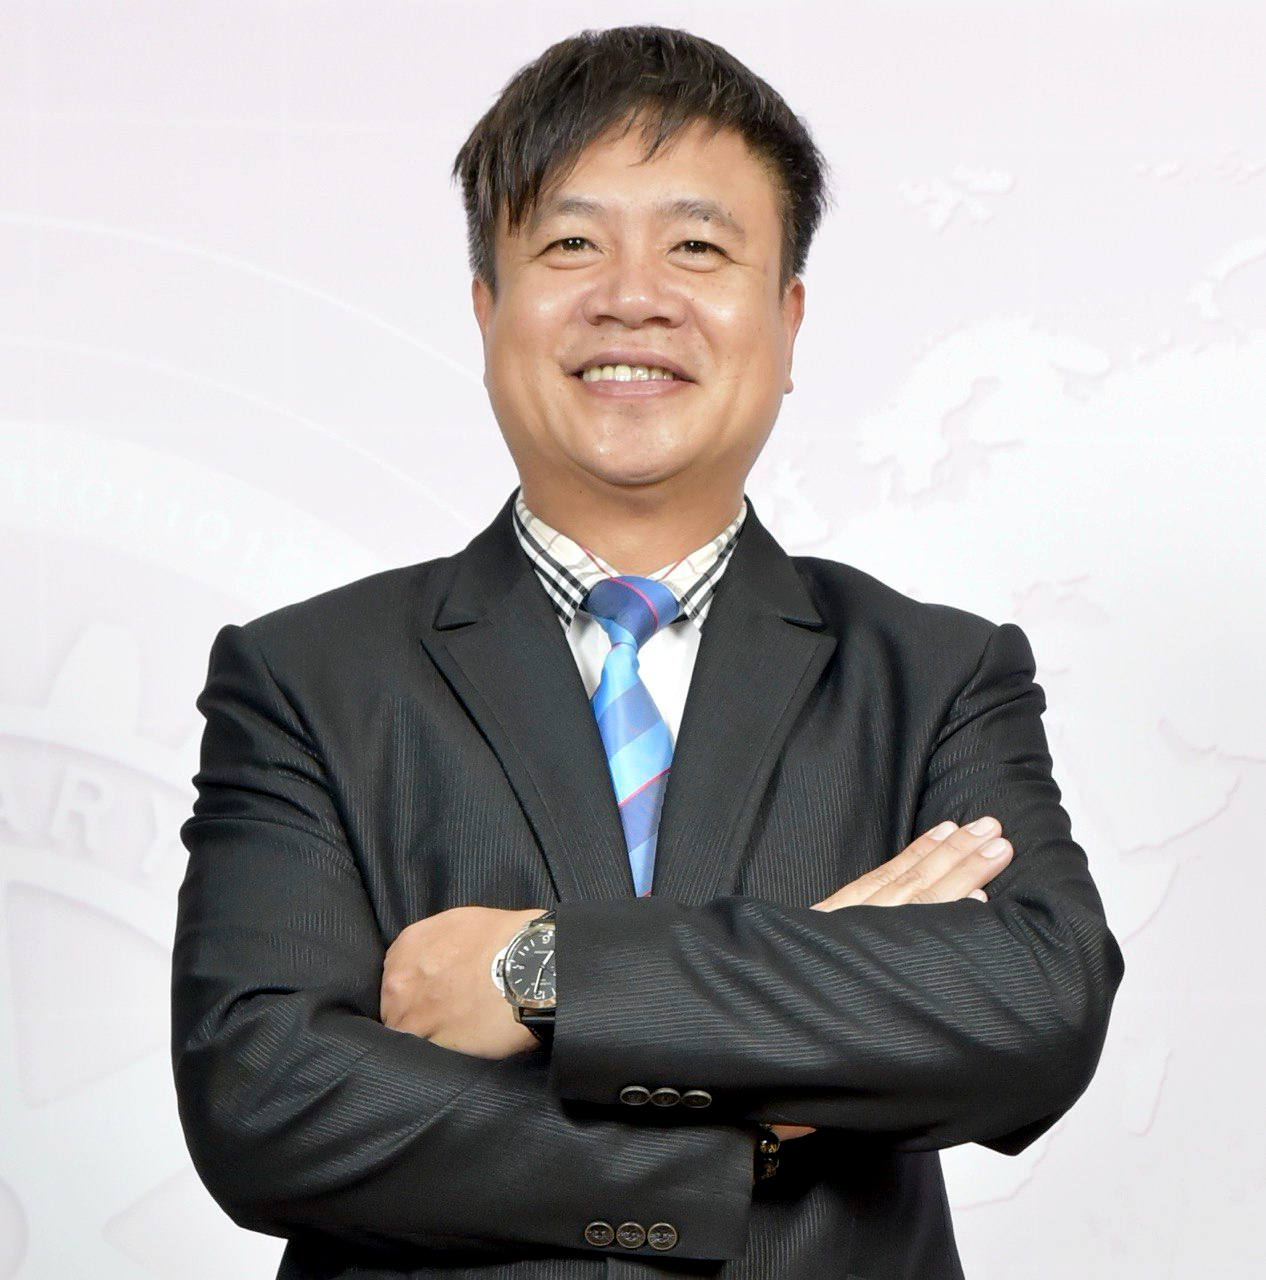 taiwanpatent founder